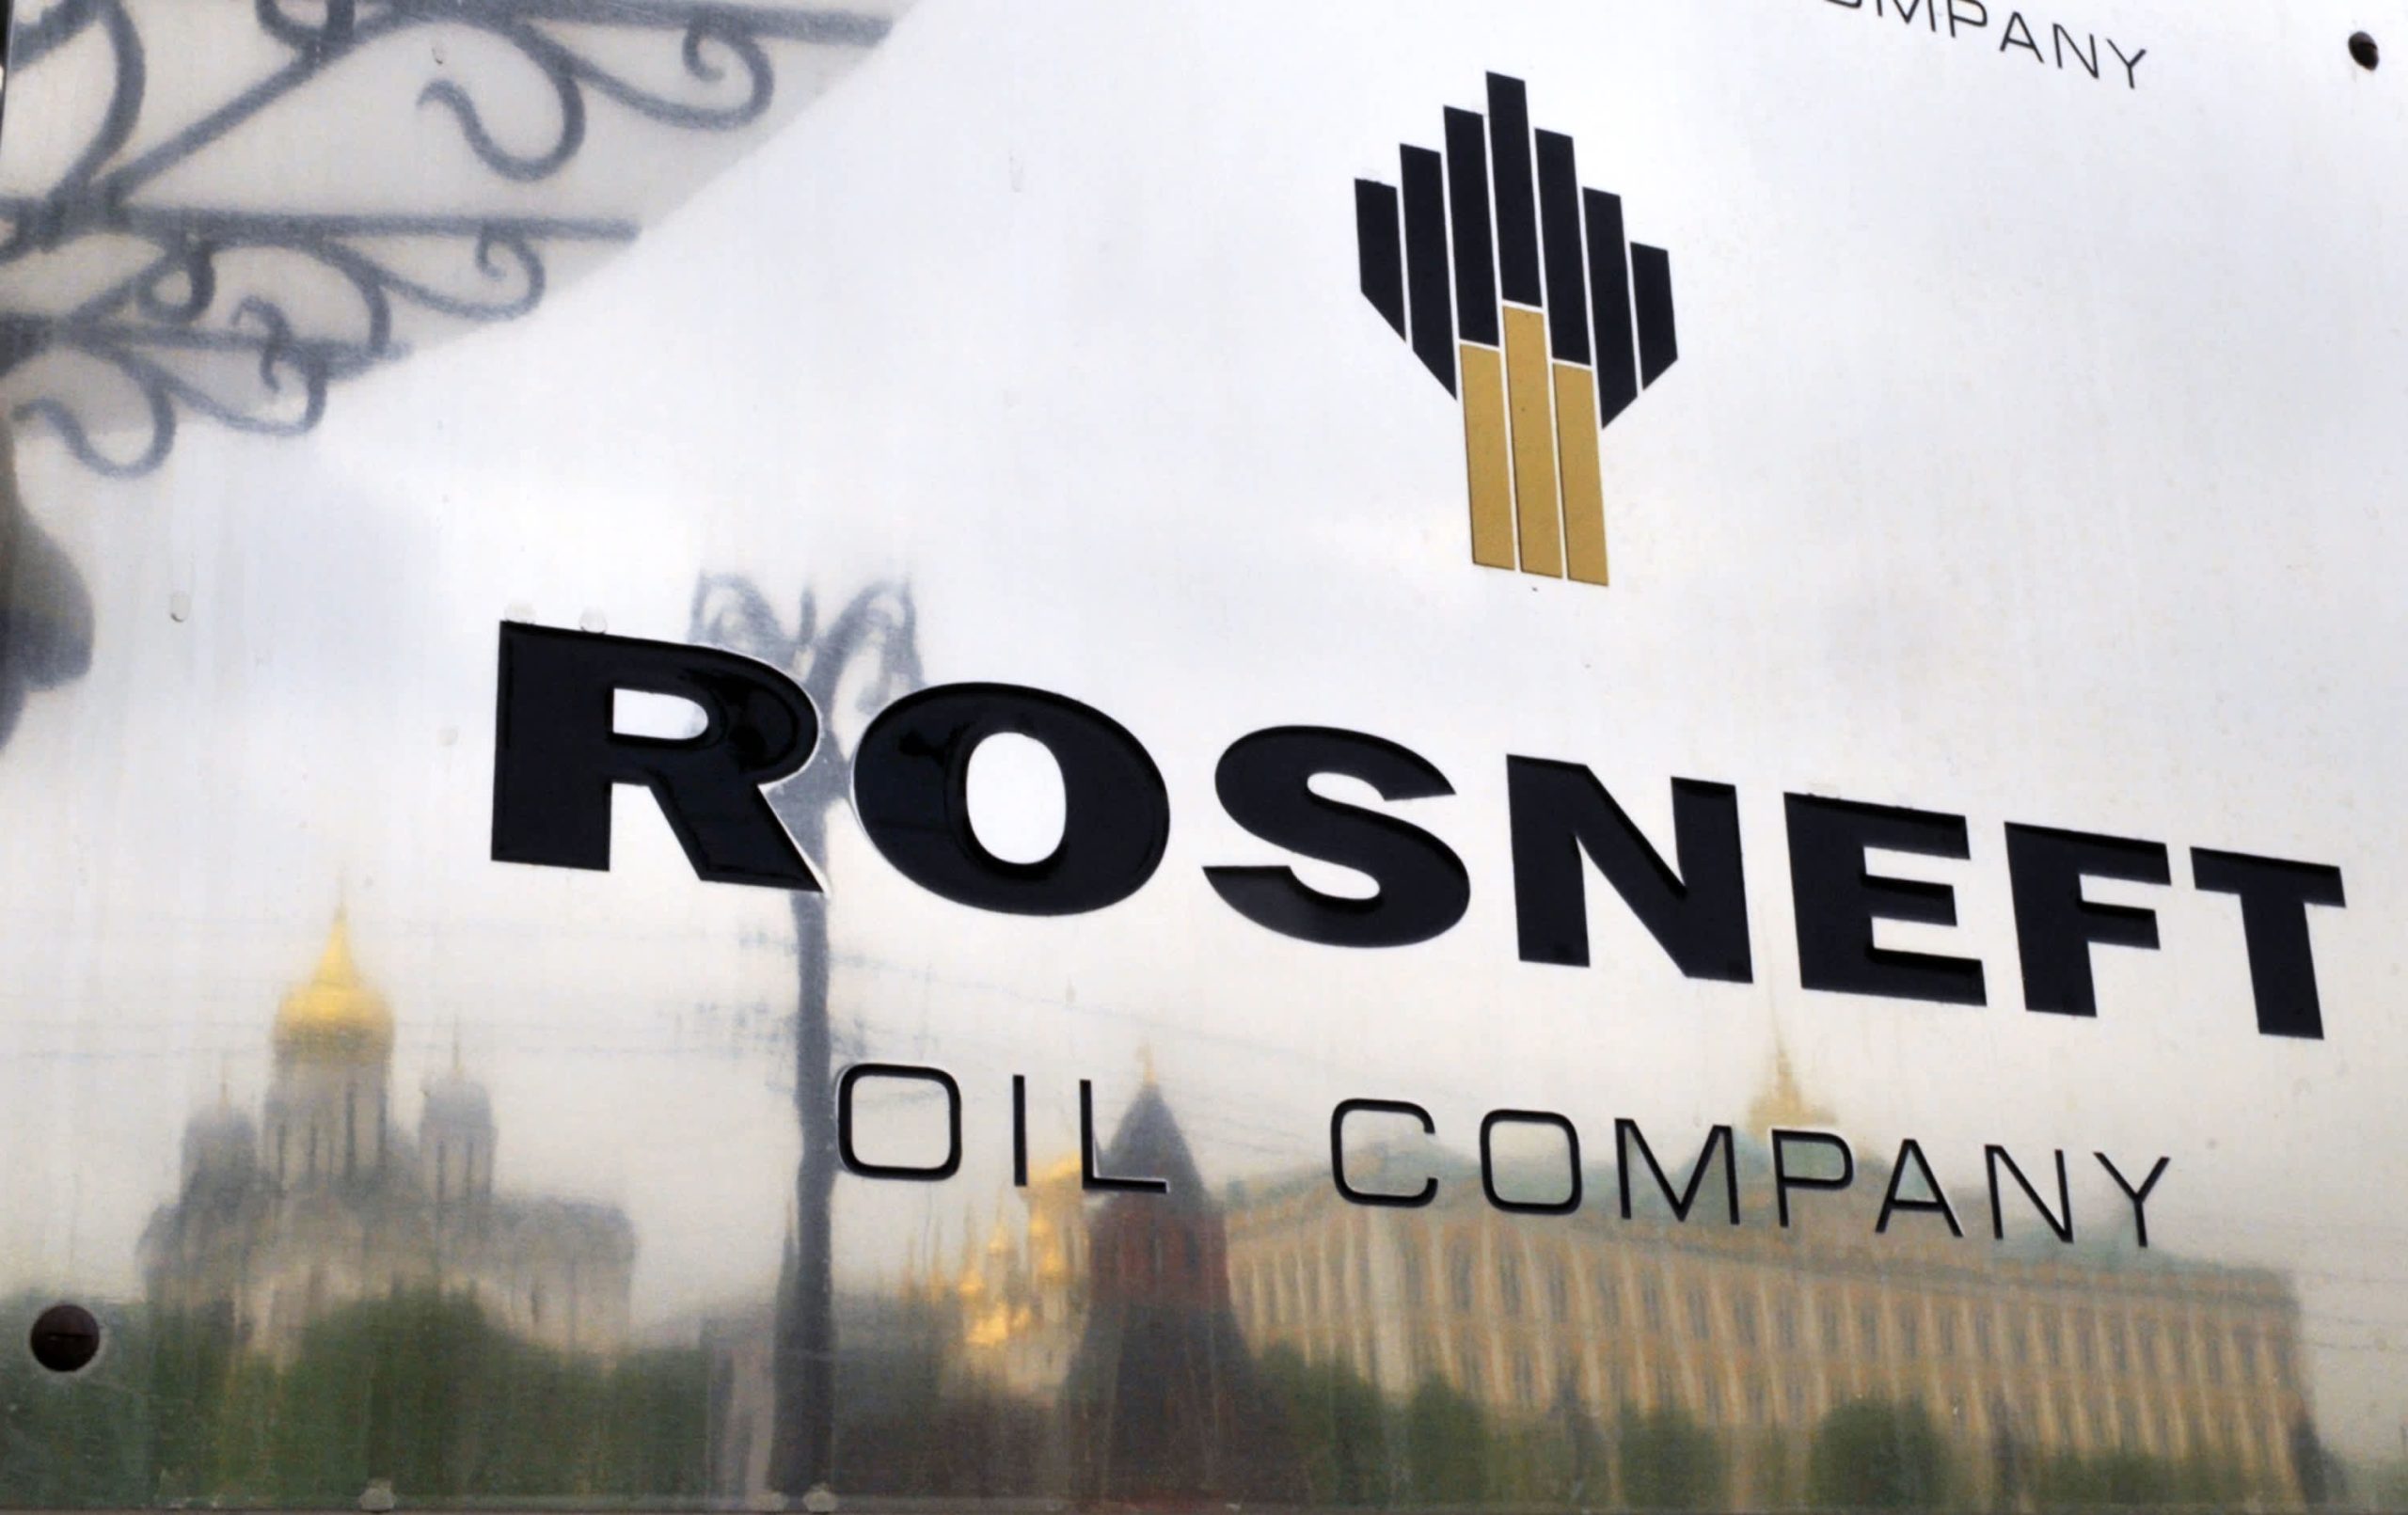 BP empties stake in Russia’s Rosneft